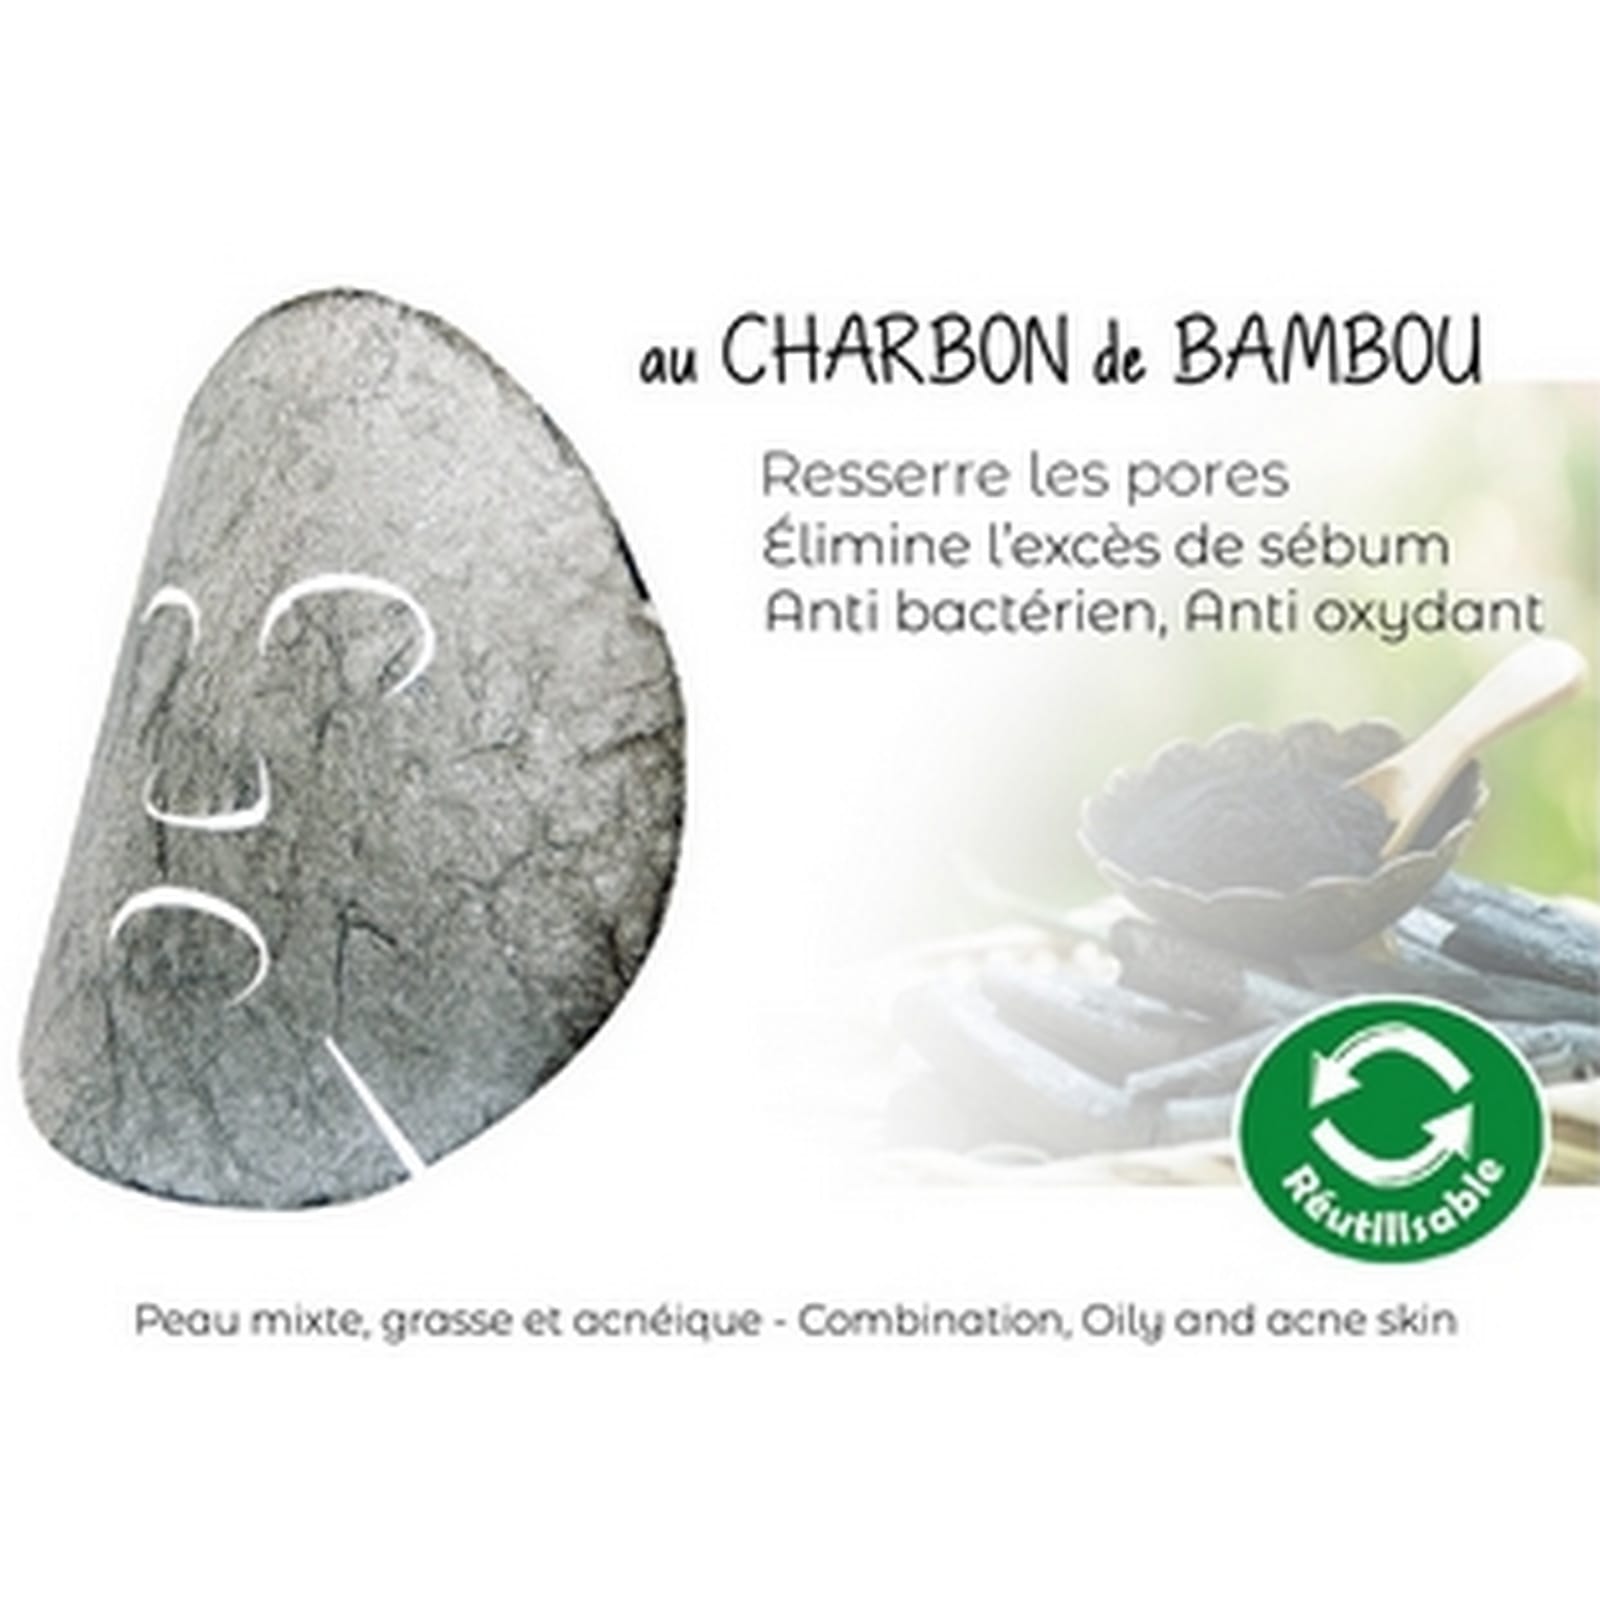 Eponge Visage Konjac au Charbon de Bambou pour Peau grasse à tendance  acnéique